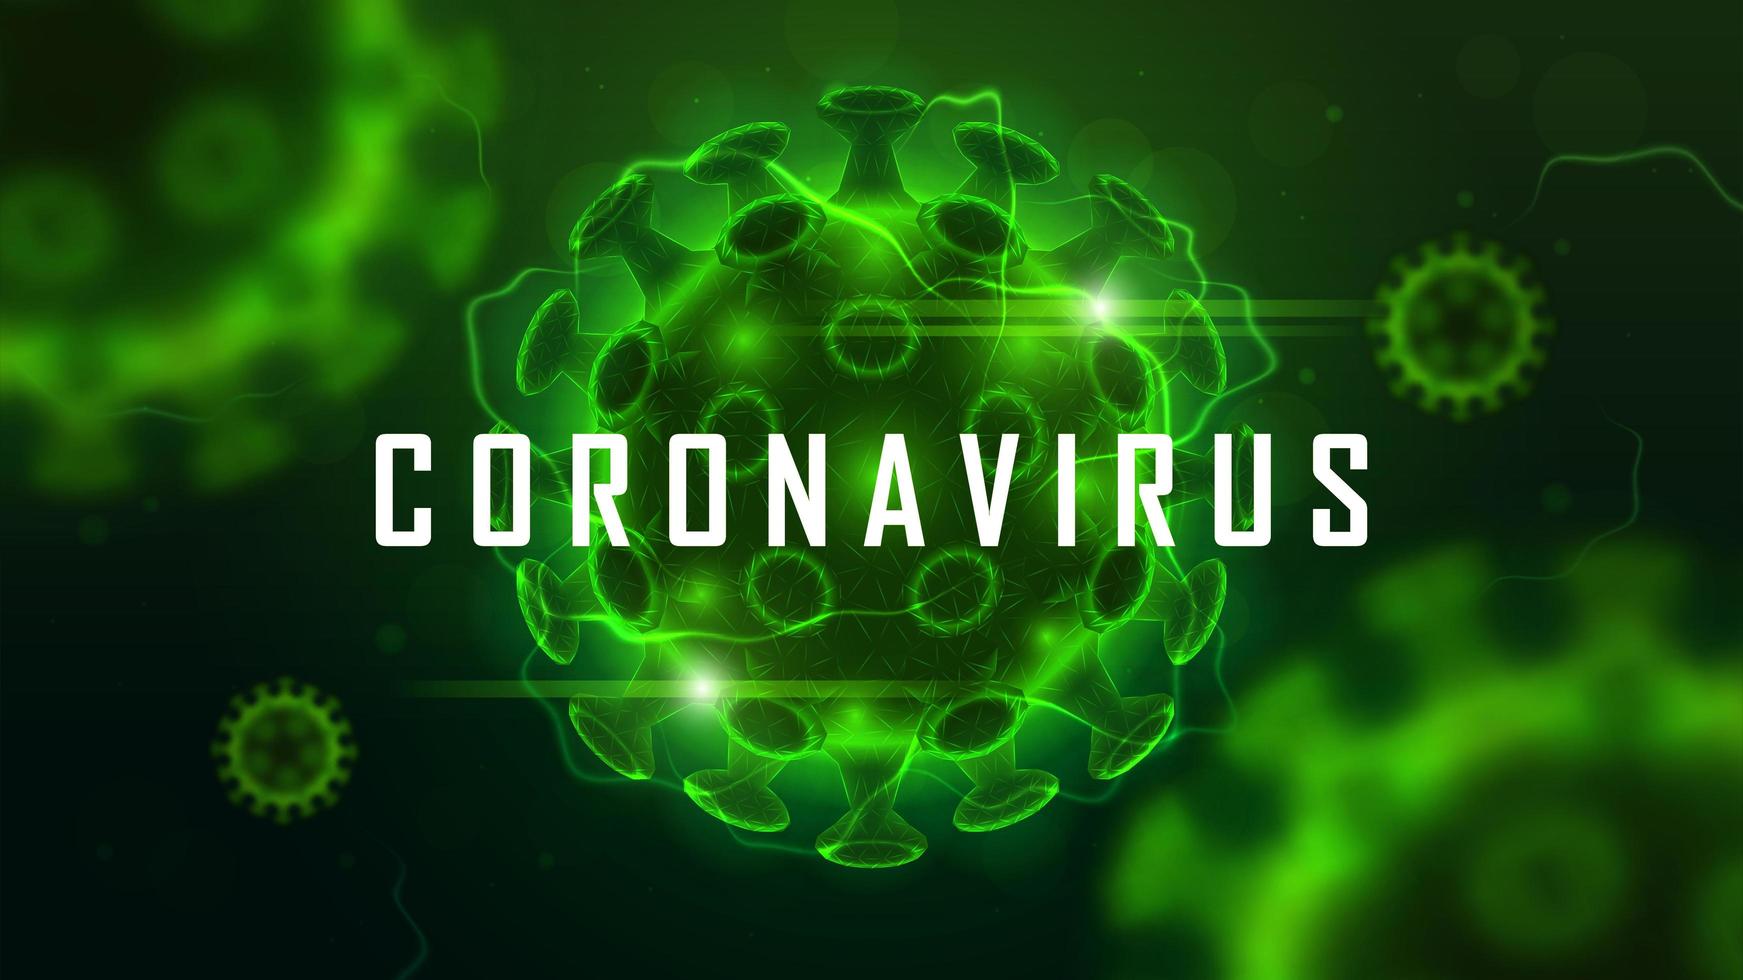 coronavirus celstructuur op groen vector